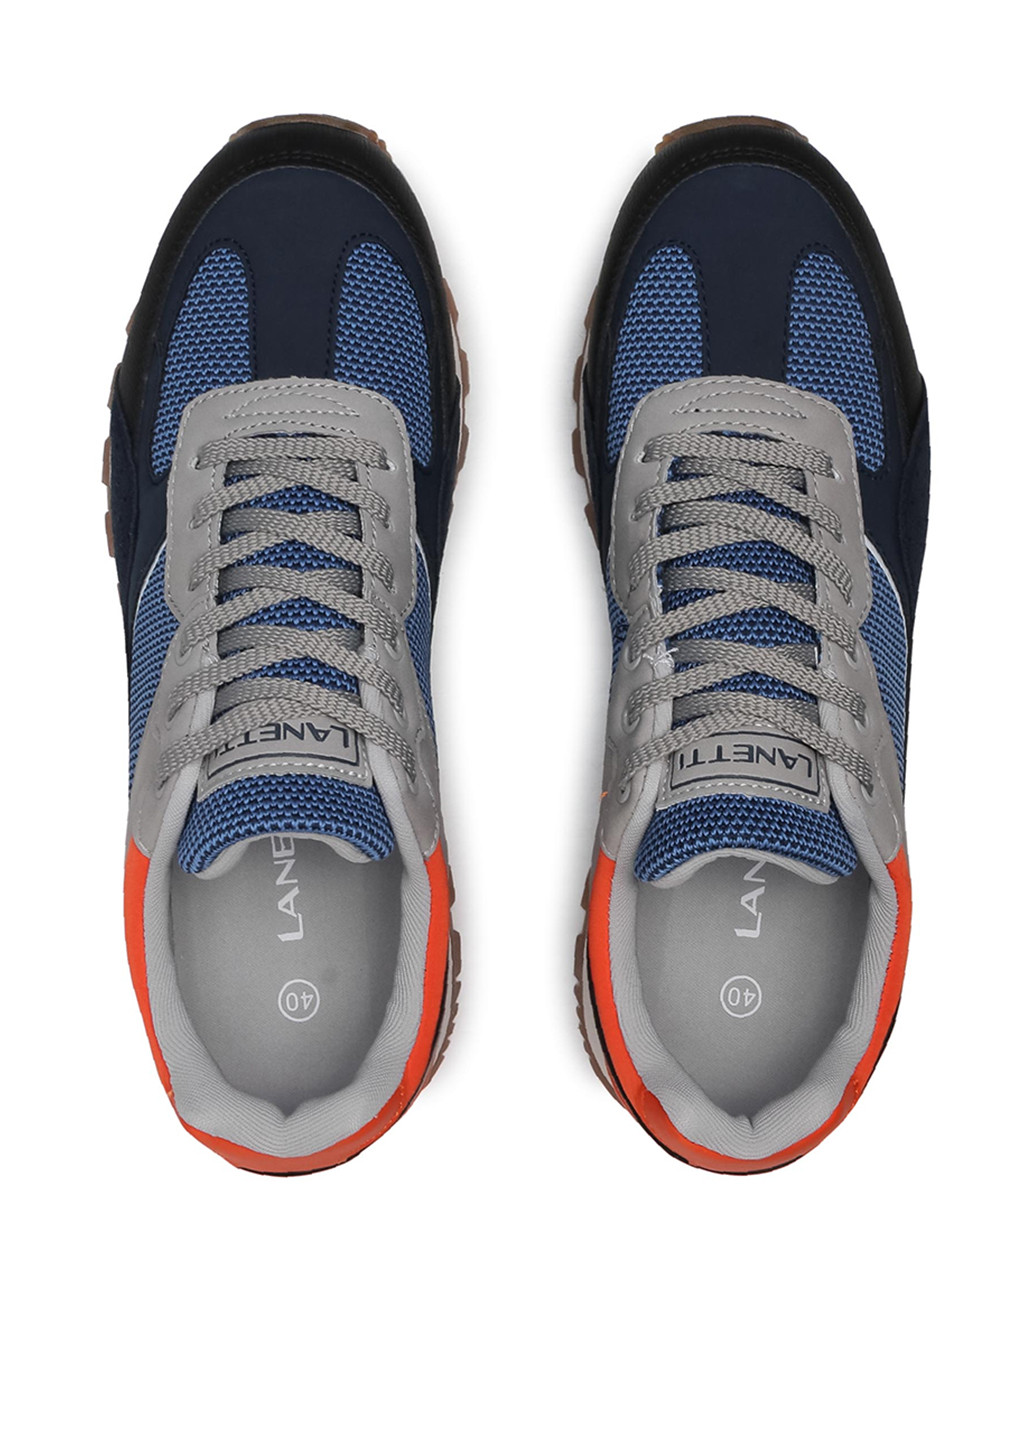 Синие демисезонные кроссовки Lanetti MP07-01450-01